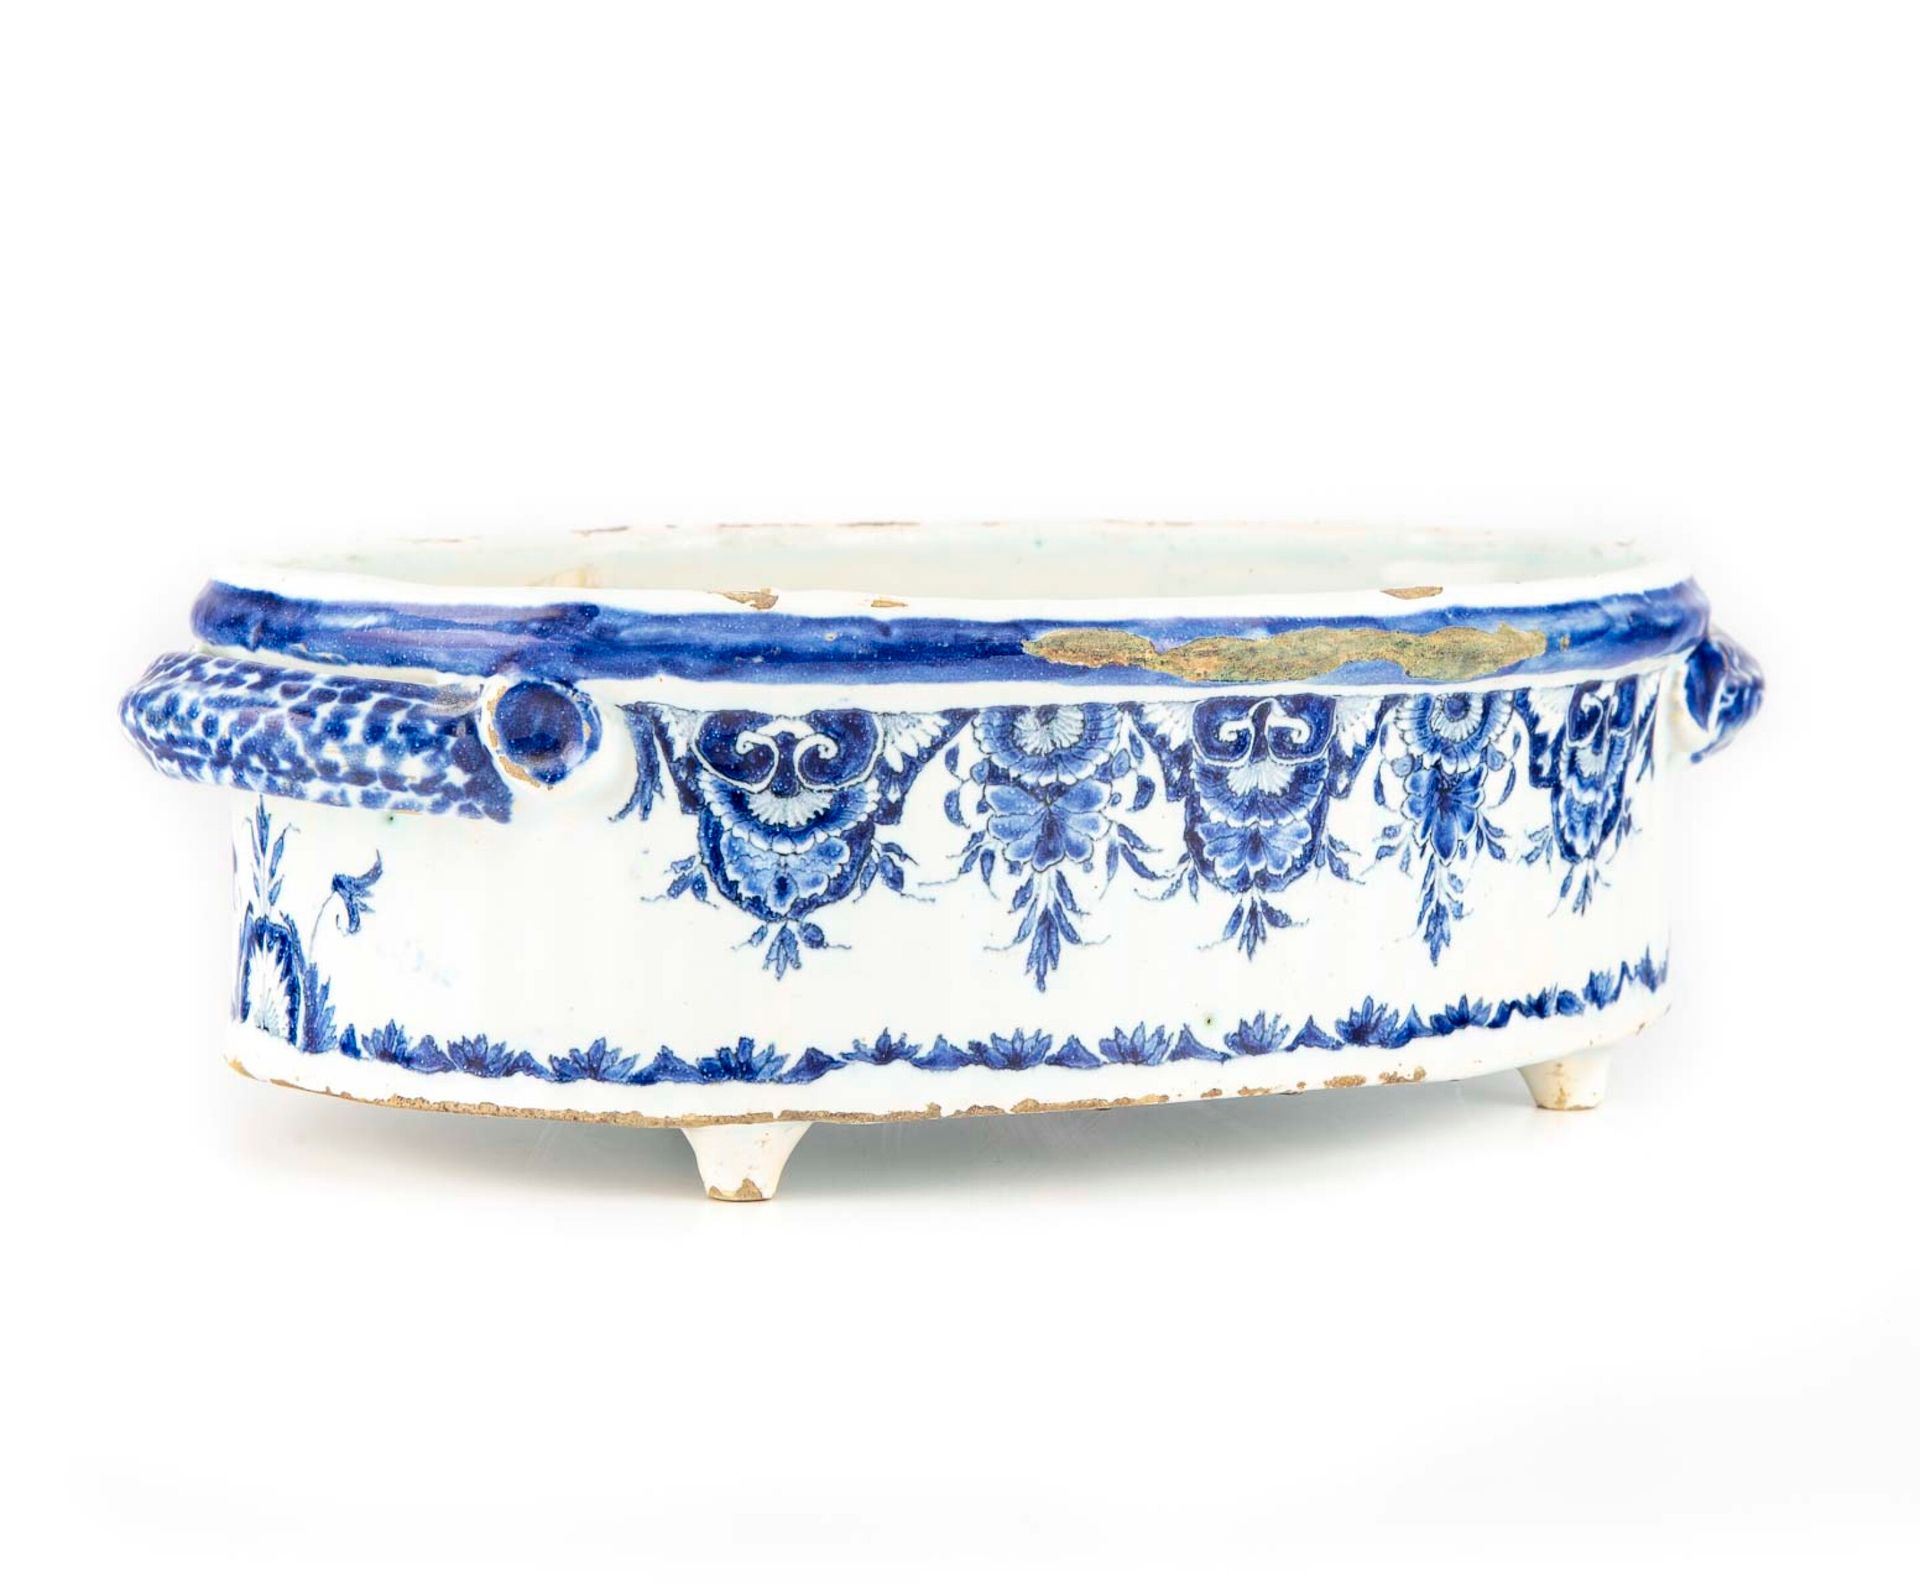 ROUEN ROUEN的制造

蓝白相间的釉面陶器花盆

18世纪

事故